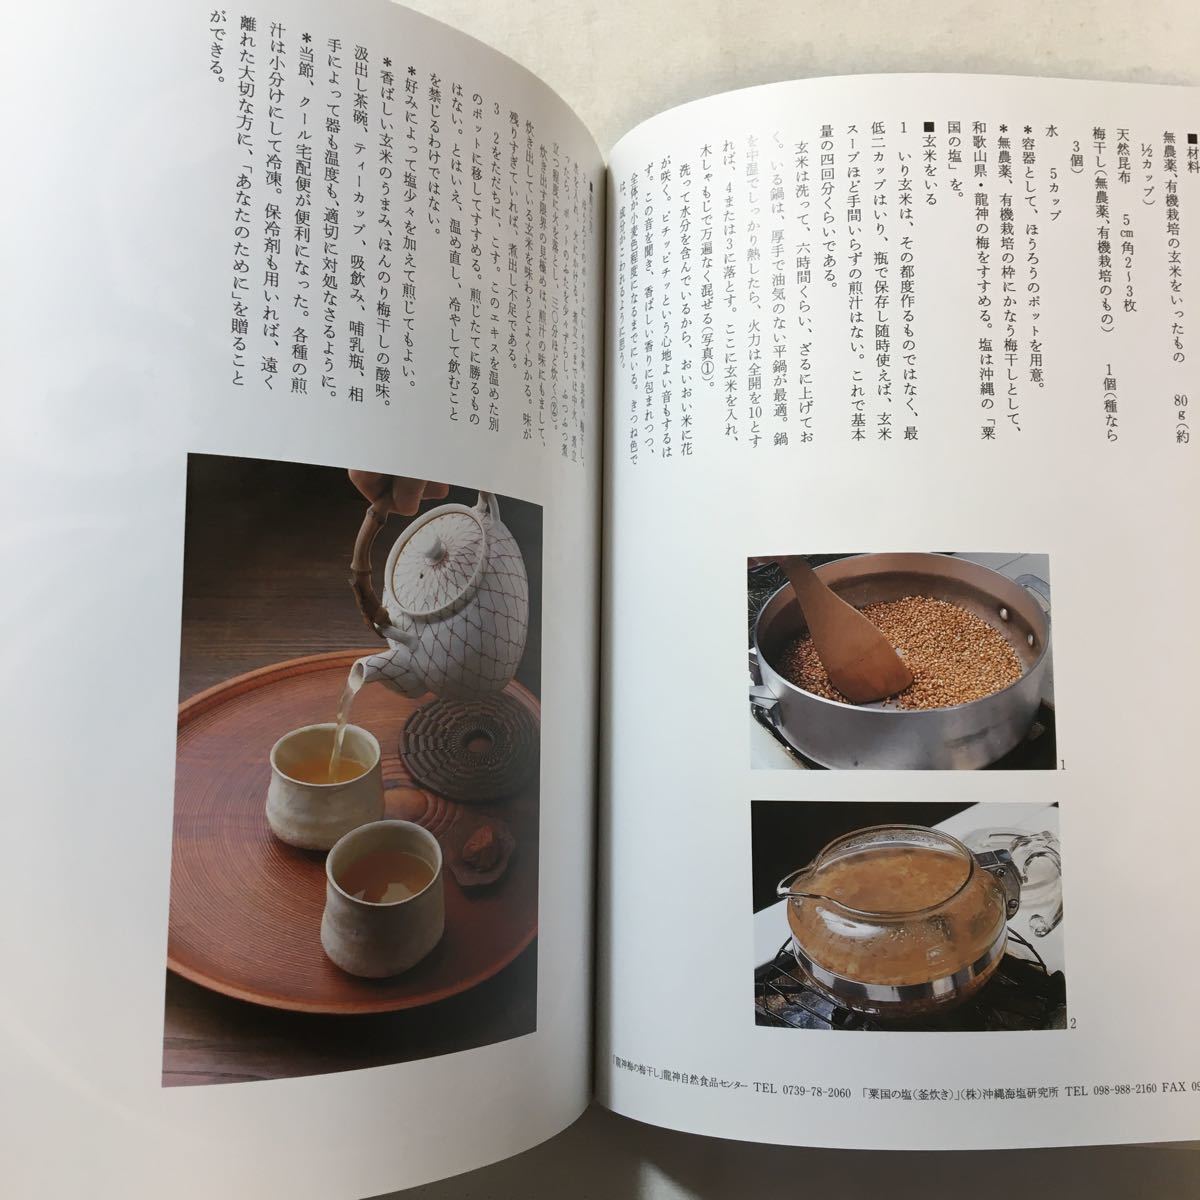 zaa-296♪あなたのために―いのちを支えるスープ 単行本 2002/8/1 辰巳 芳子 (著)の画像4